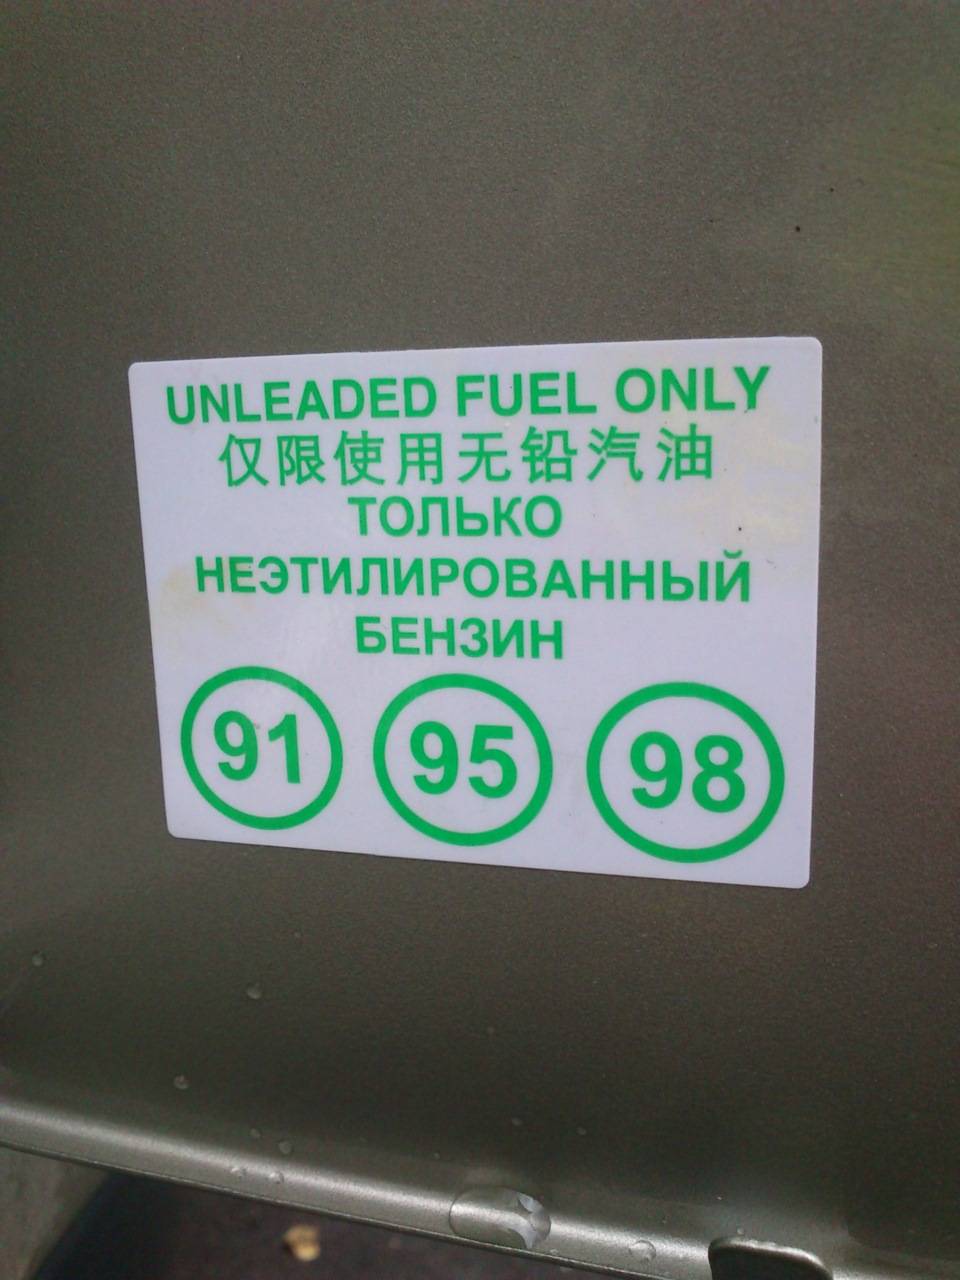 Какой бензин лучше заливать в хендай солярис: 92 или 95, опрос